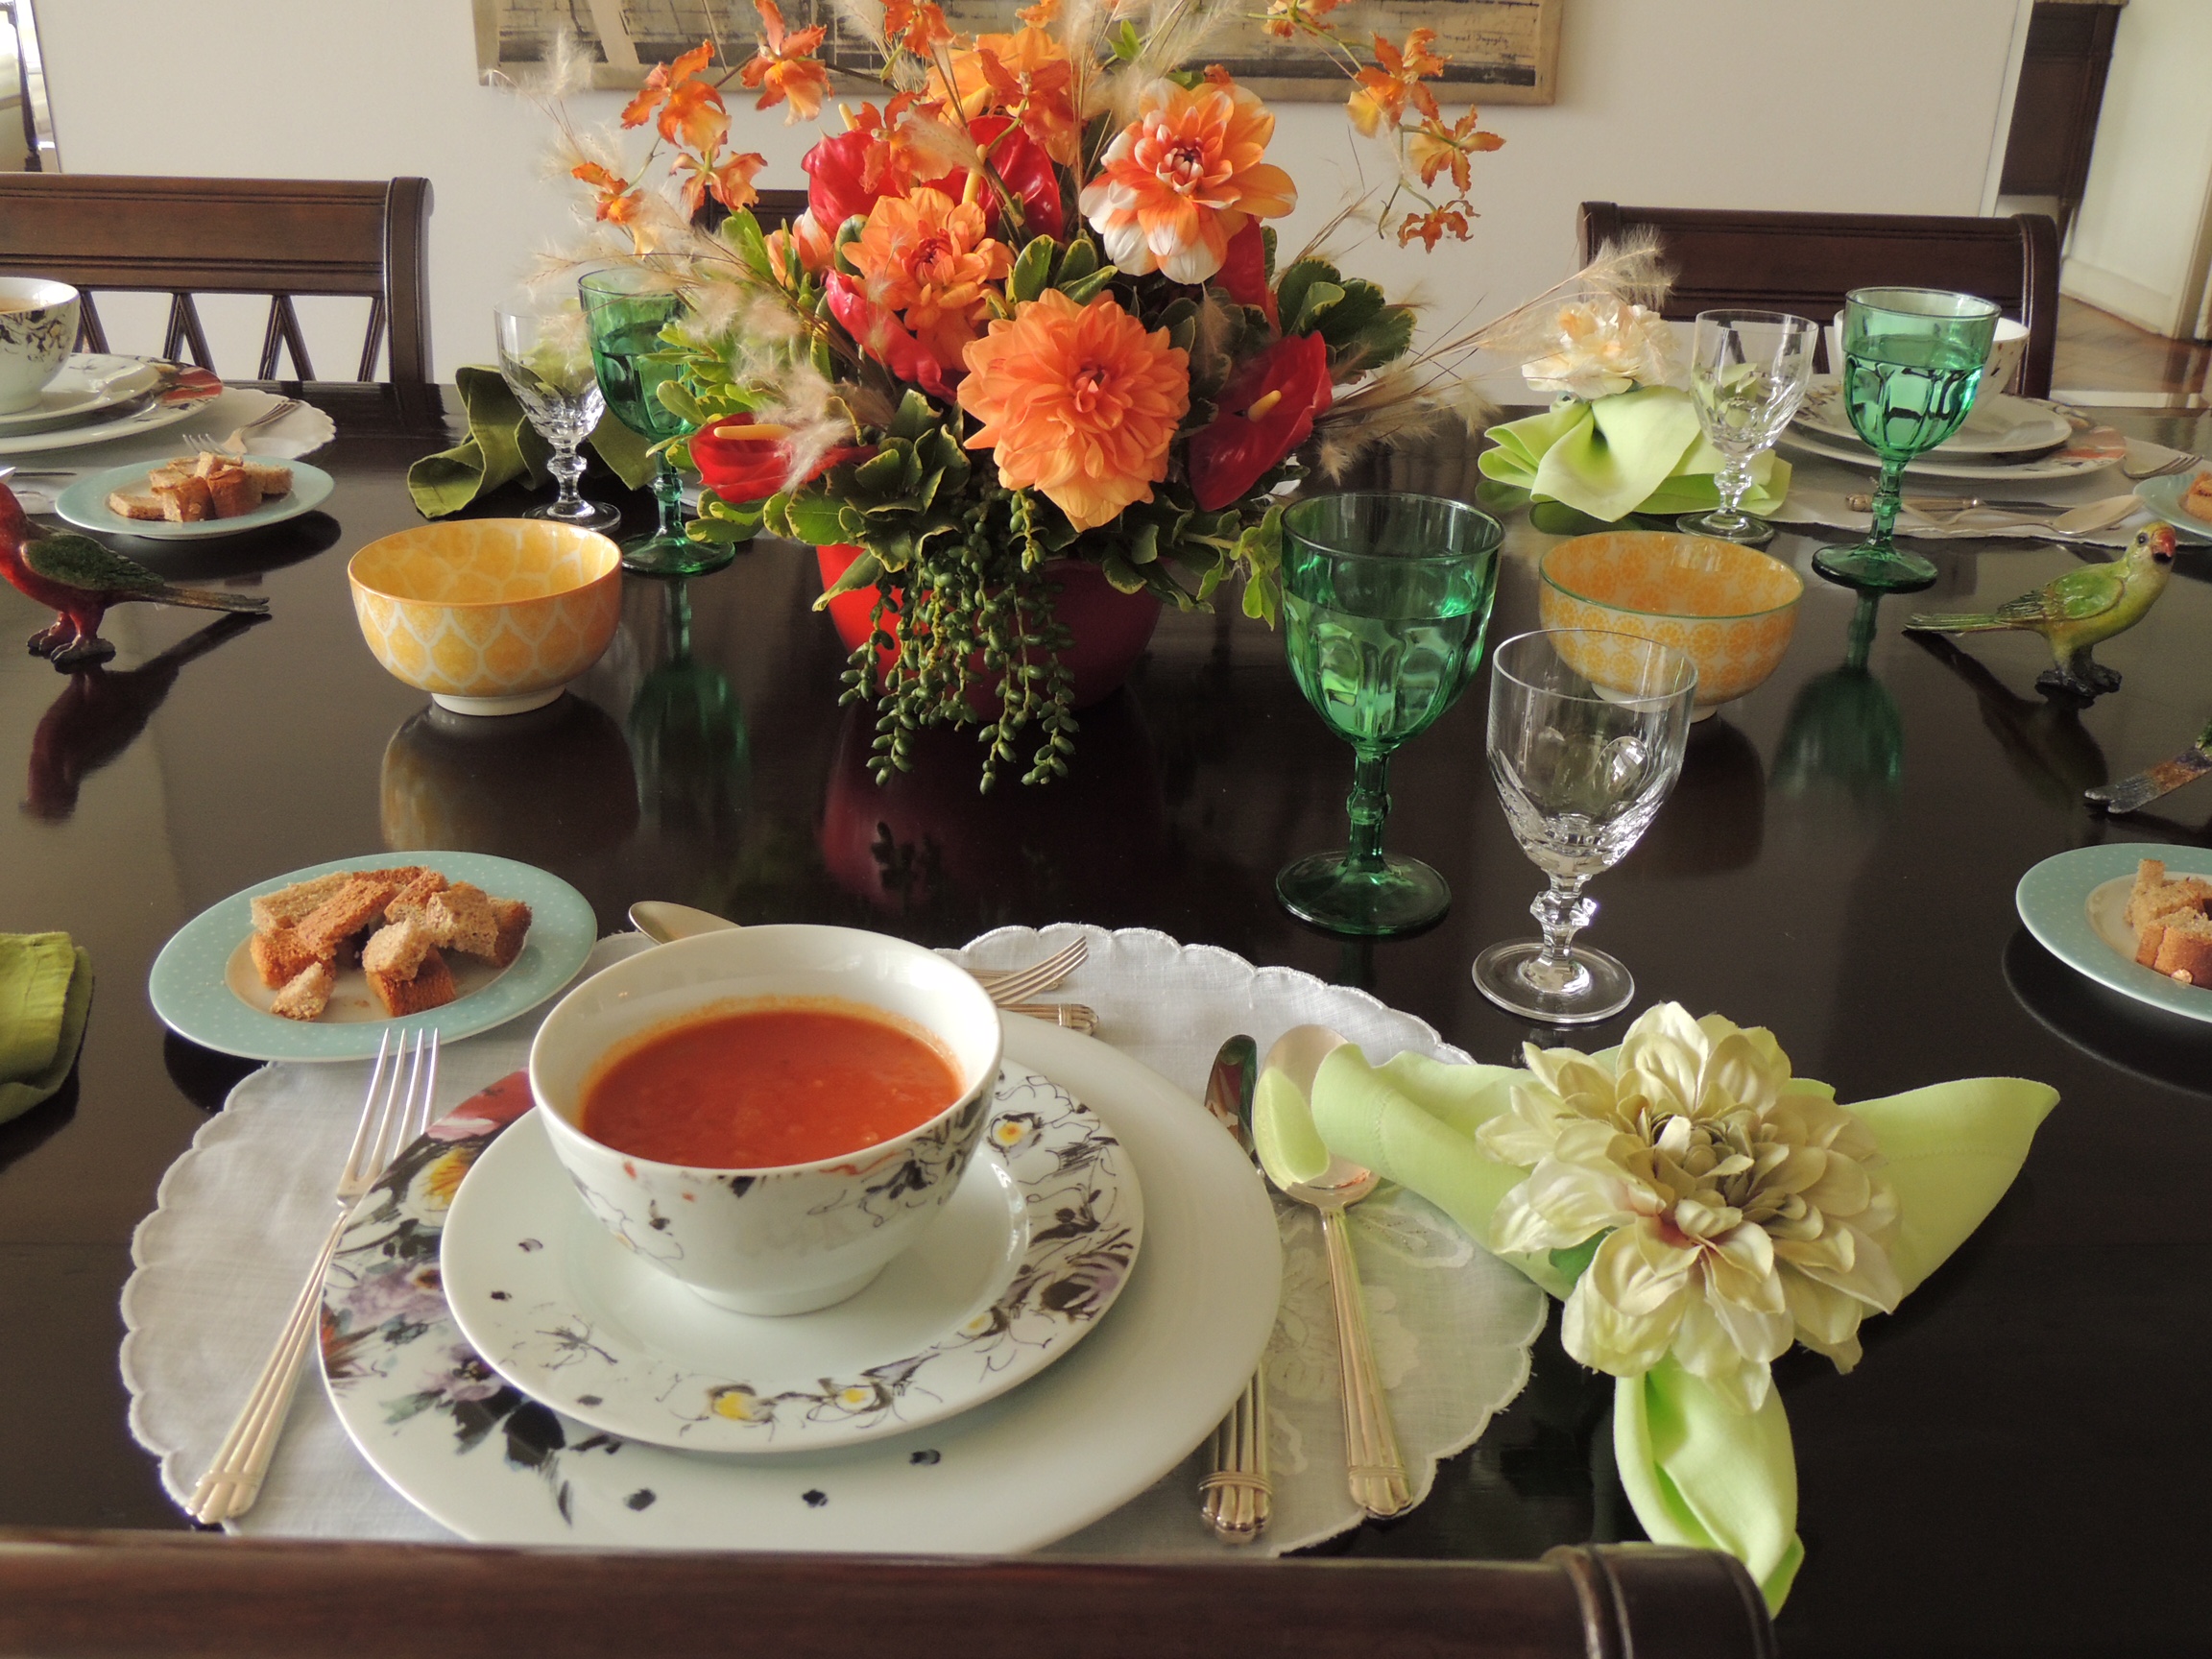 Mesa de jantar montada , com todos os utensilios e acessórios. Flores ao centro na cor branca e laranja. Algumas taças estão em detalhe - a taça de água em tom verde e a taça de vinho branco, em cristal transparente.